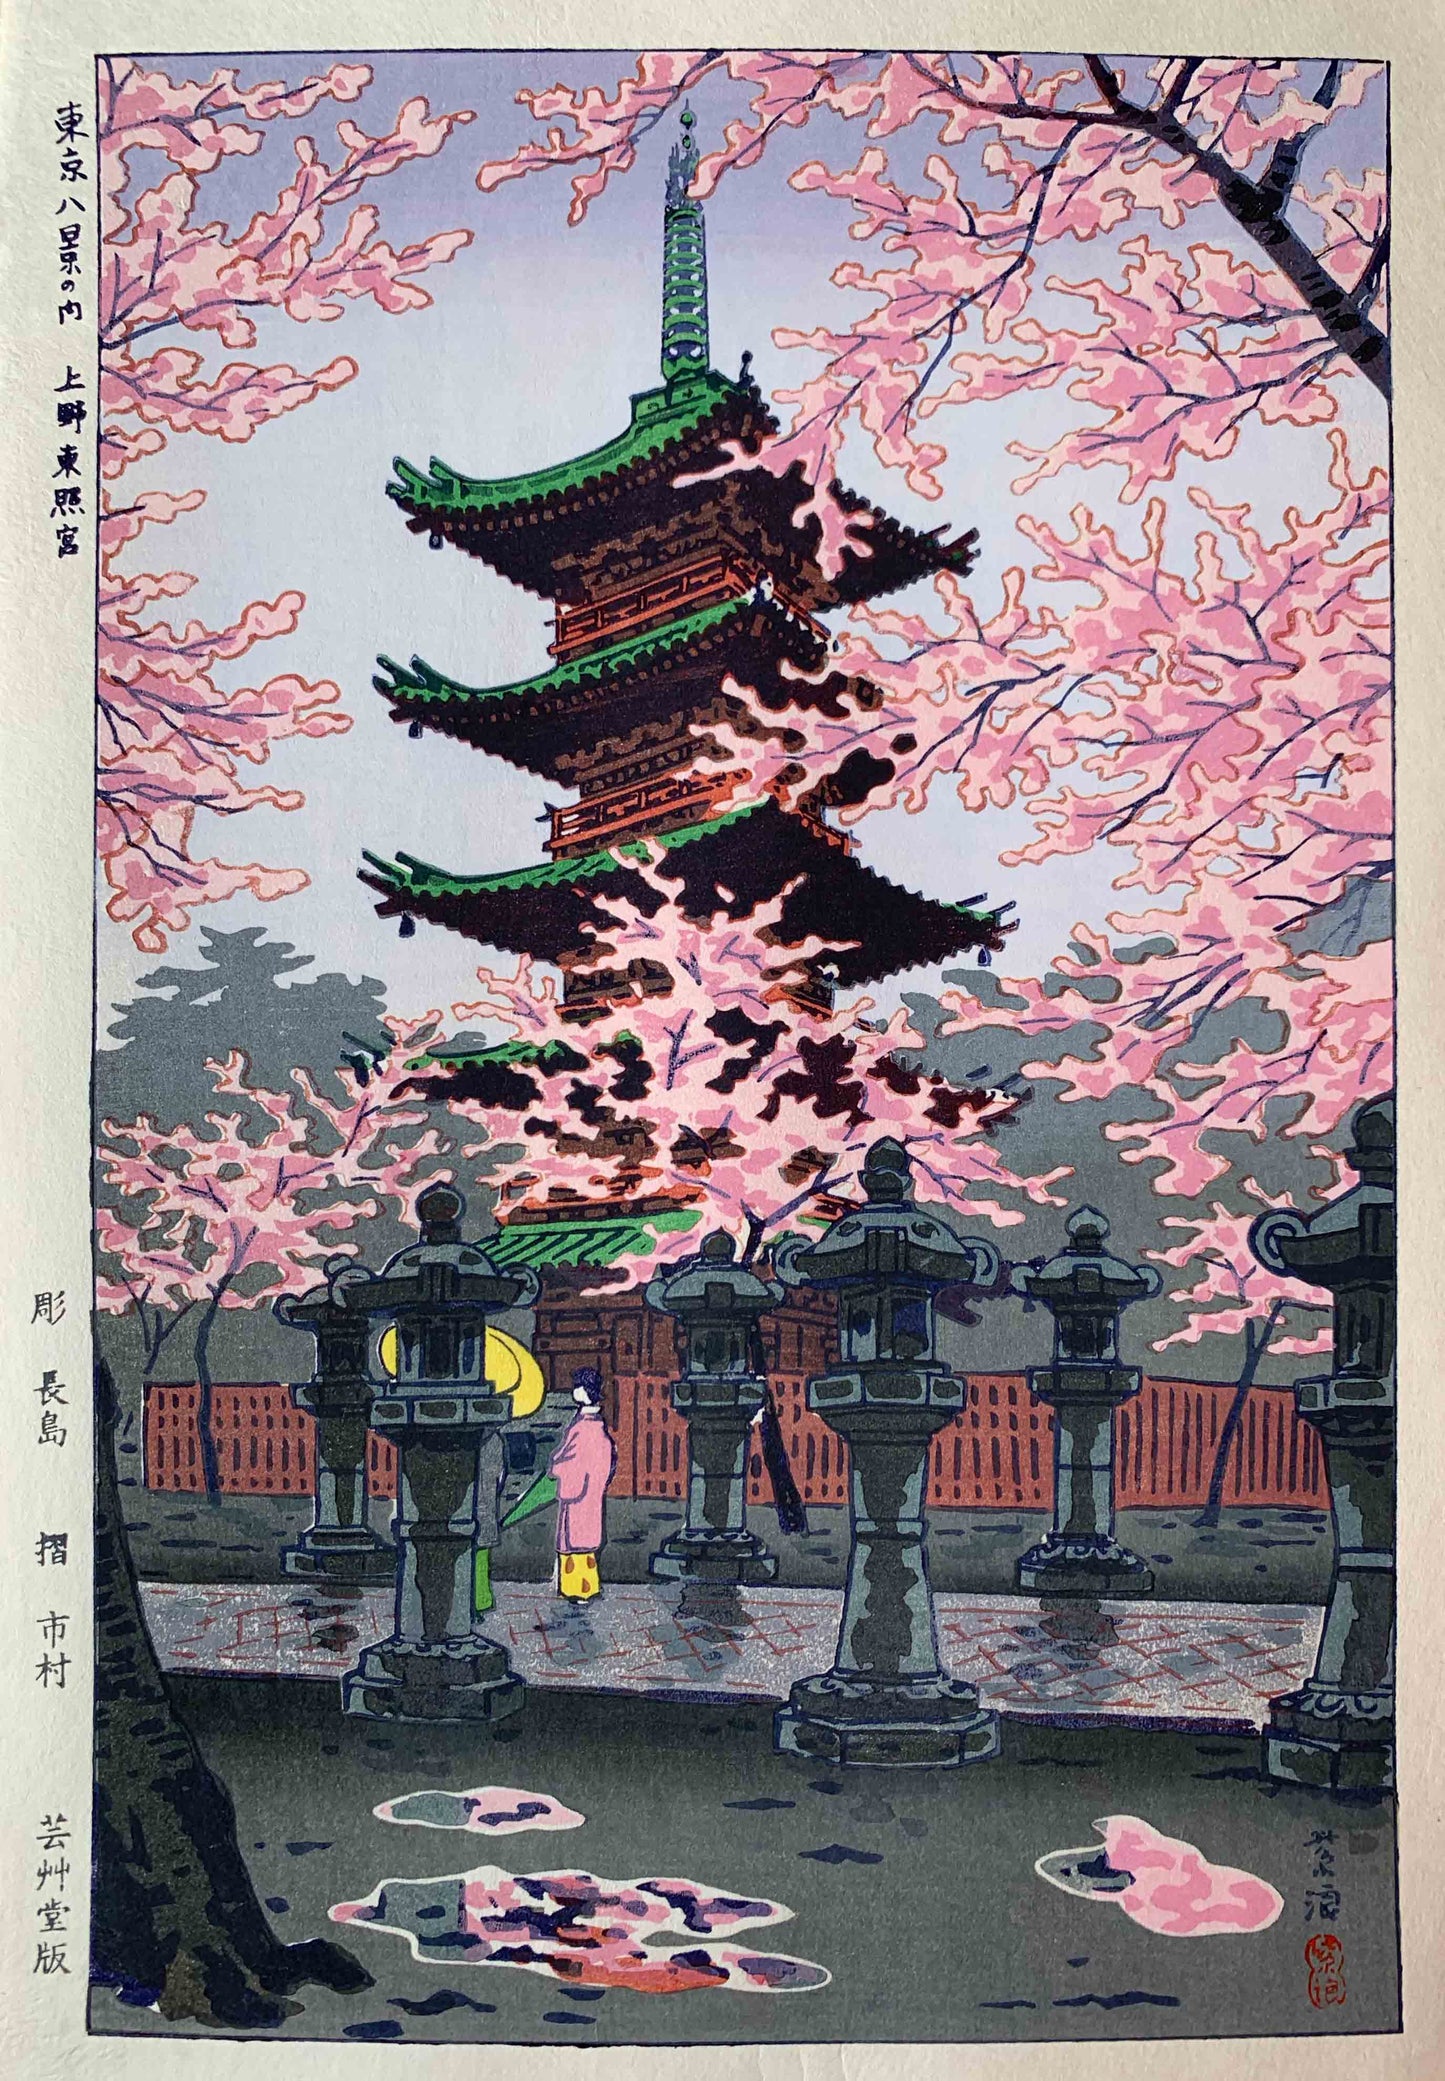 estampe japonaise de kasamatsu shiro temple toshogu printemps